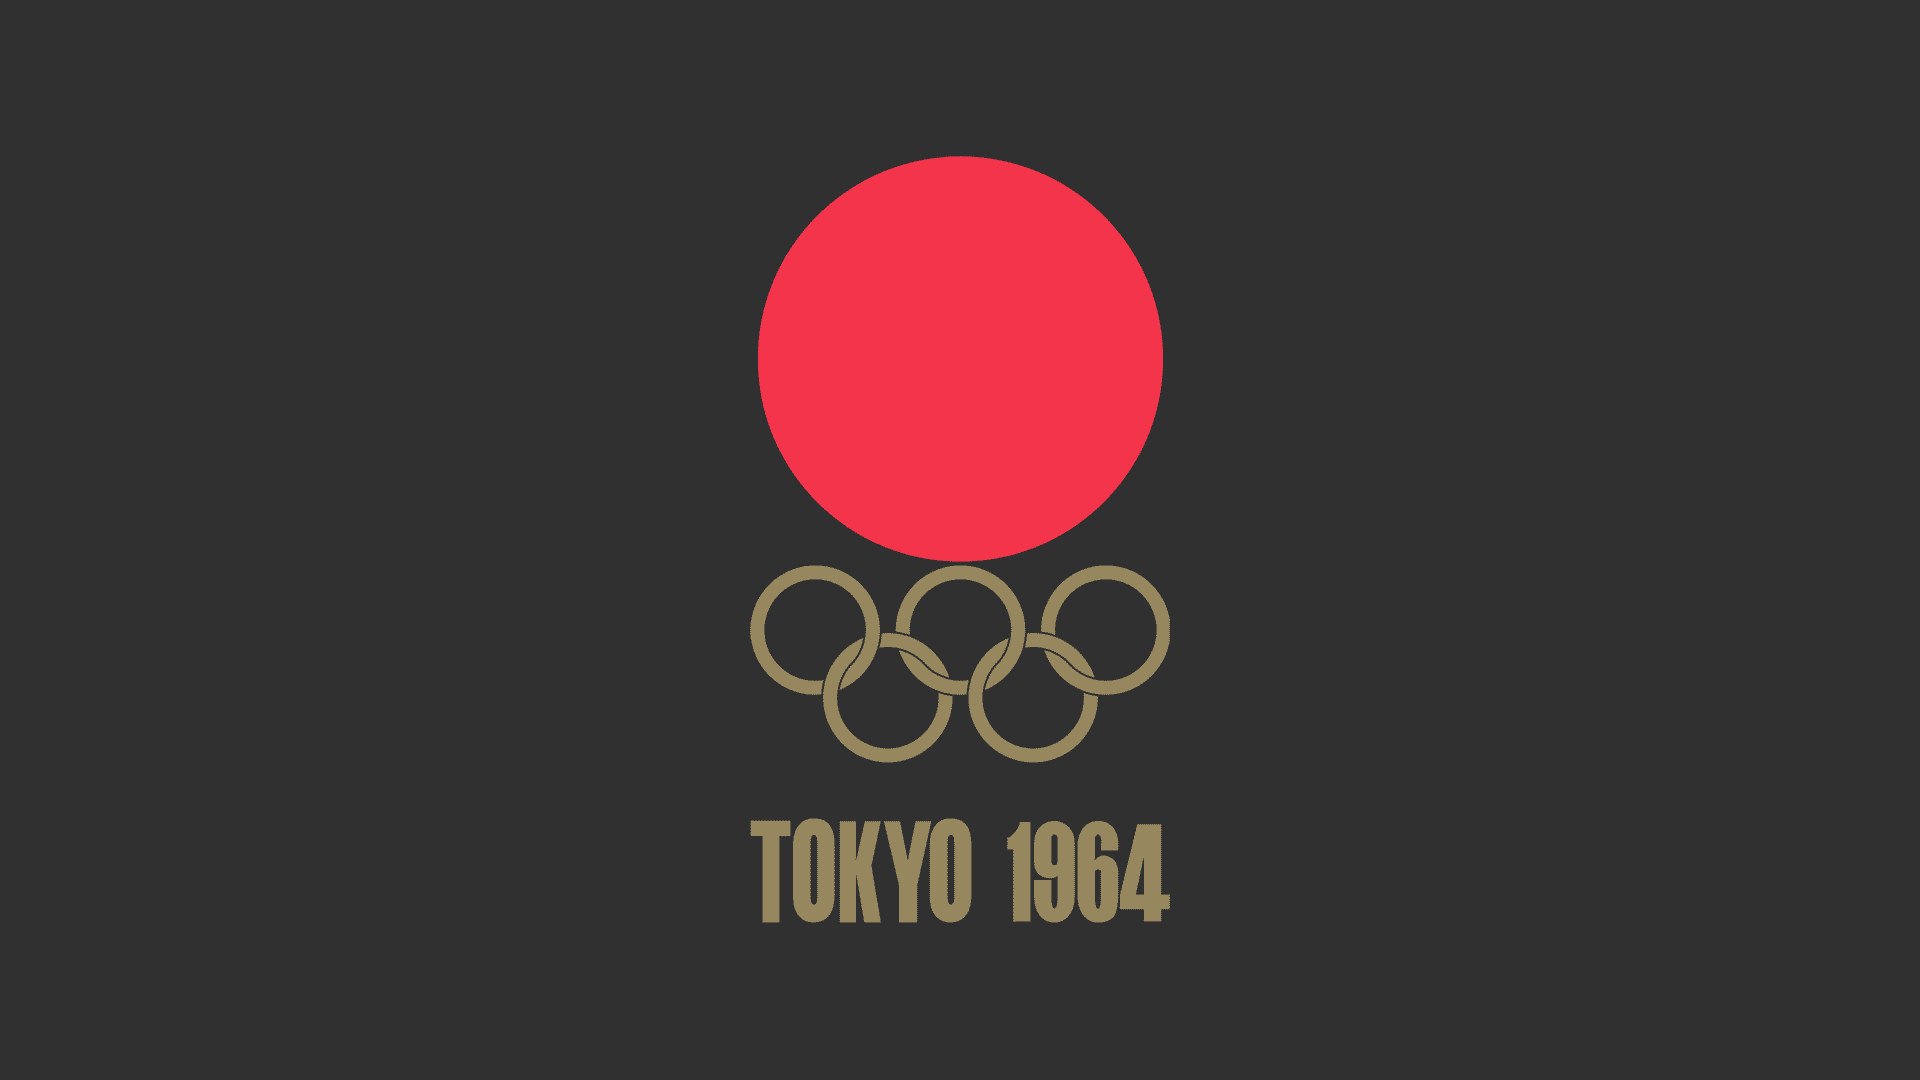 設計專家：這是有史以來最好的奧運會徽 4